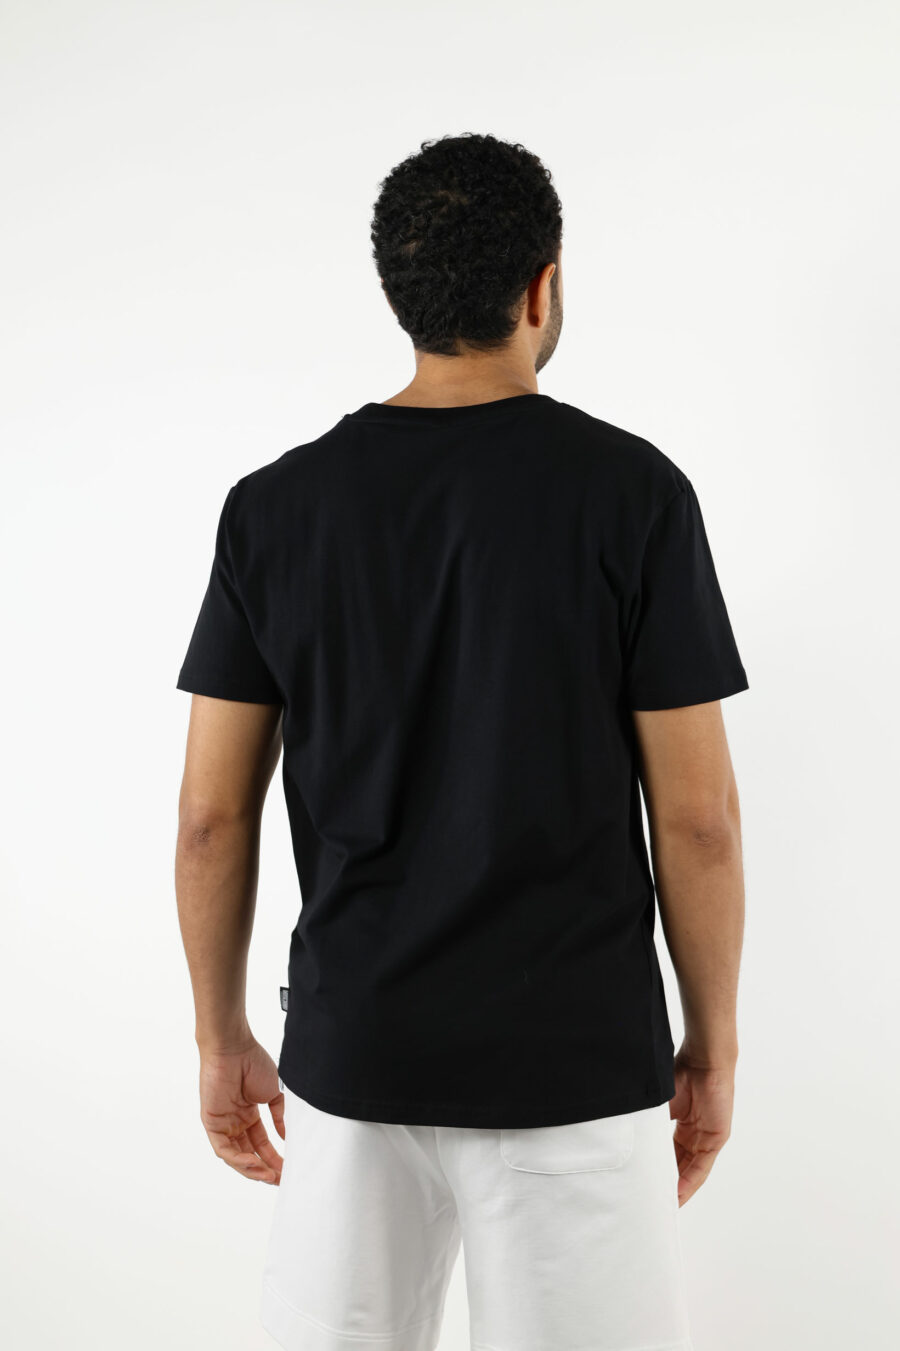 Camiseta negra con minilogo oso "underbear" en goma blanco - 111016